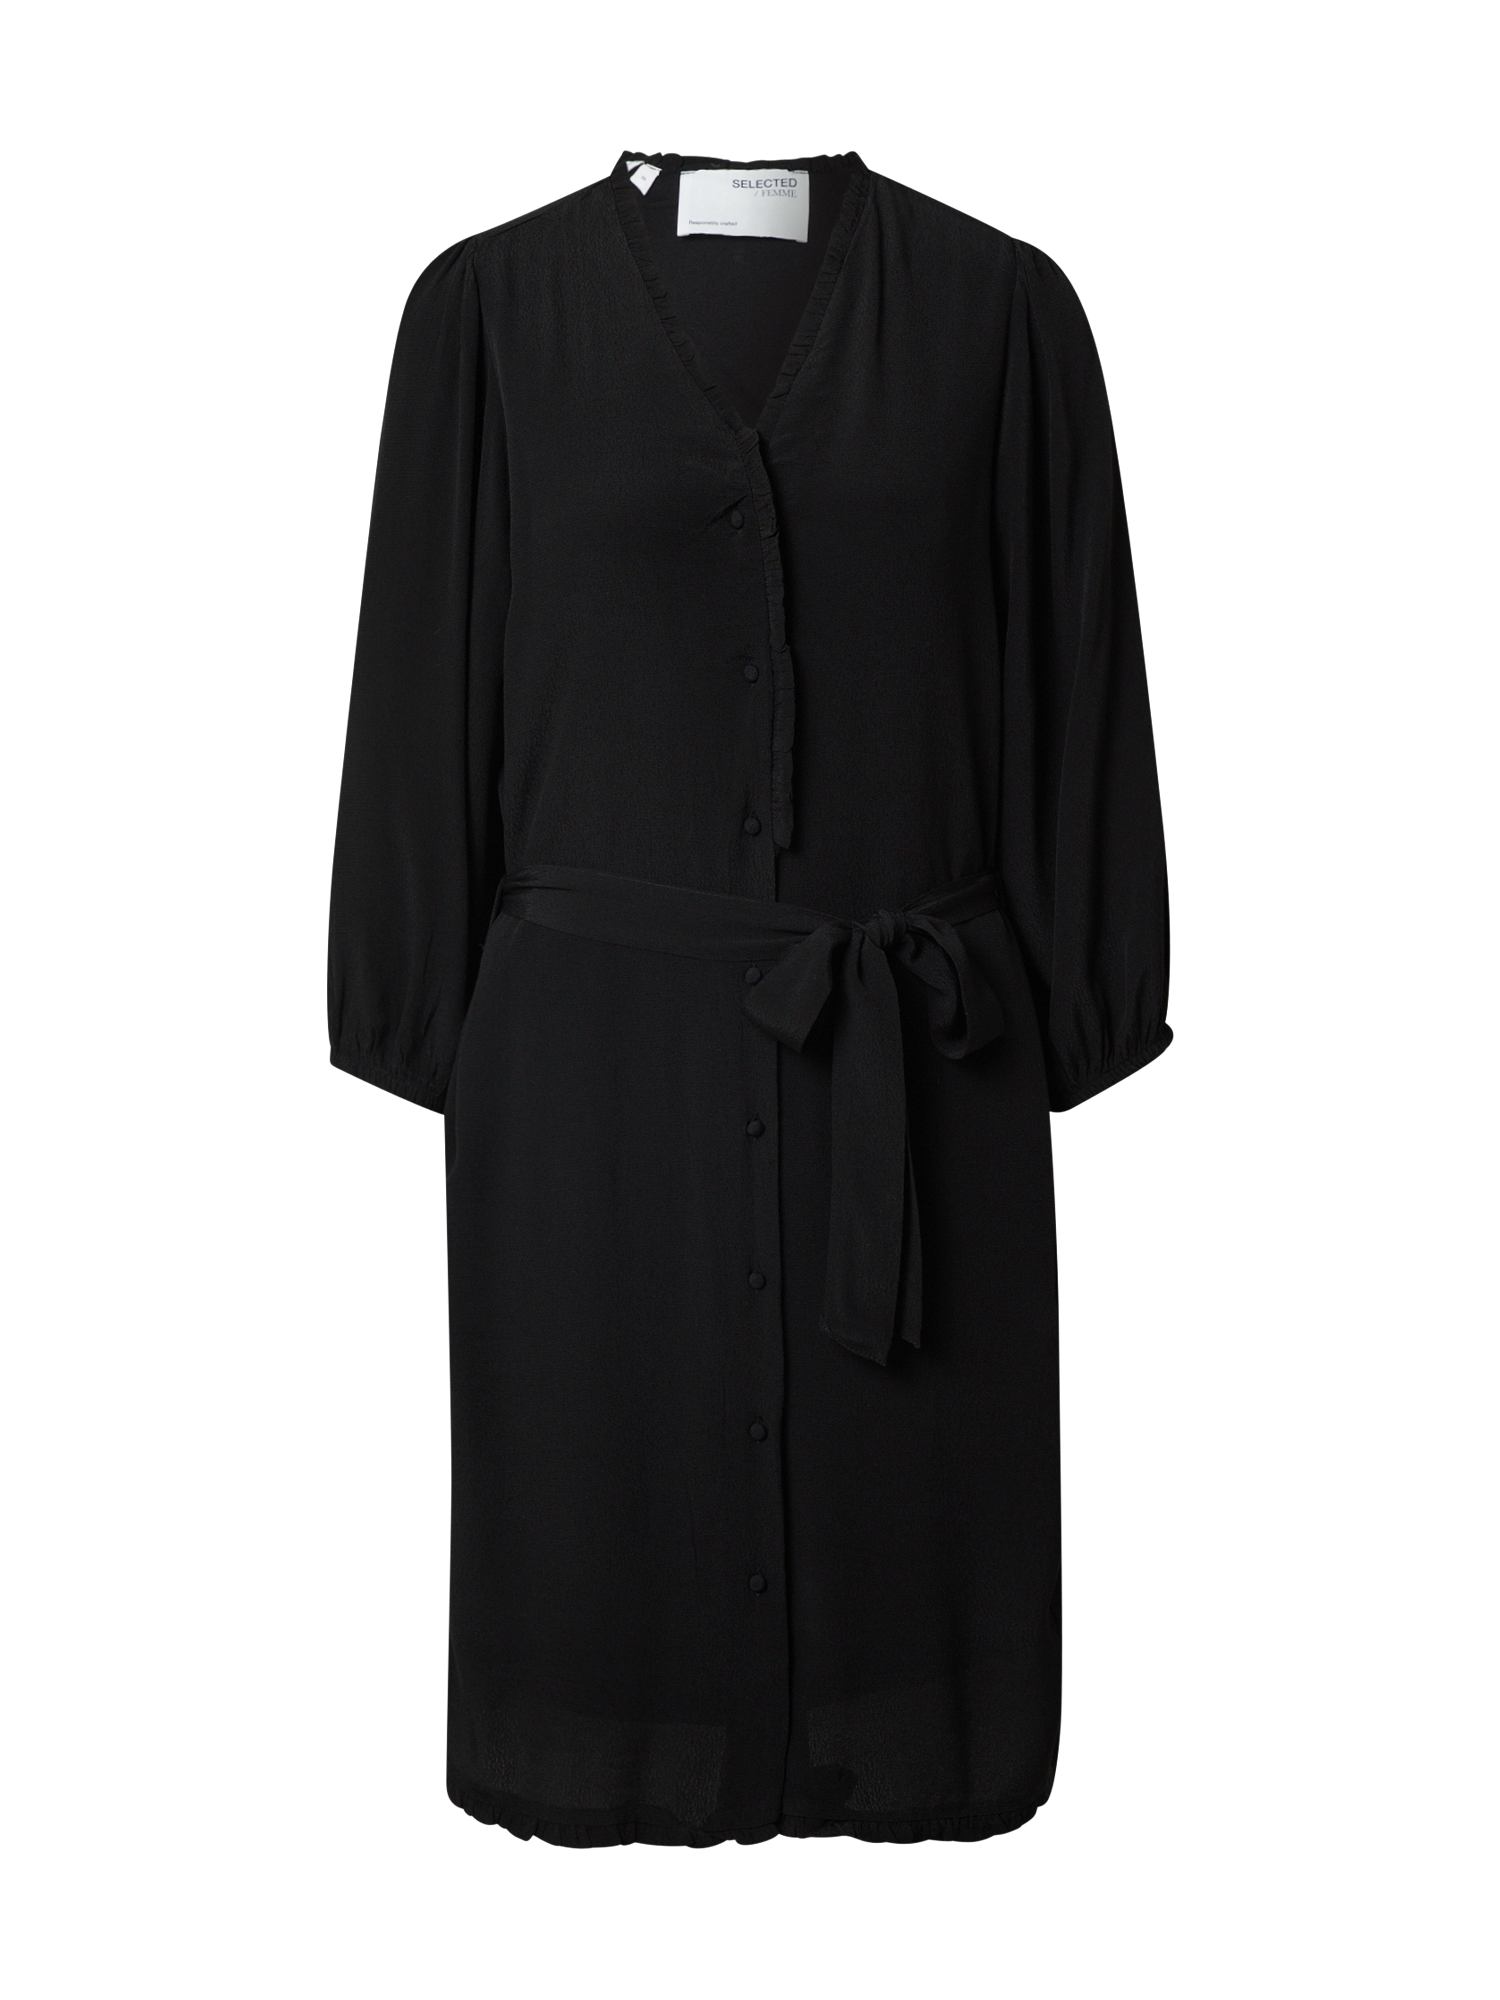 Odzież vLGsr SELECTED FEMME Sukienka w kolorze Czarnym 